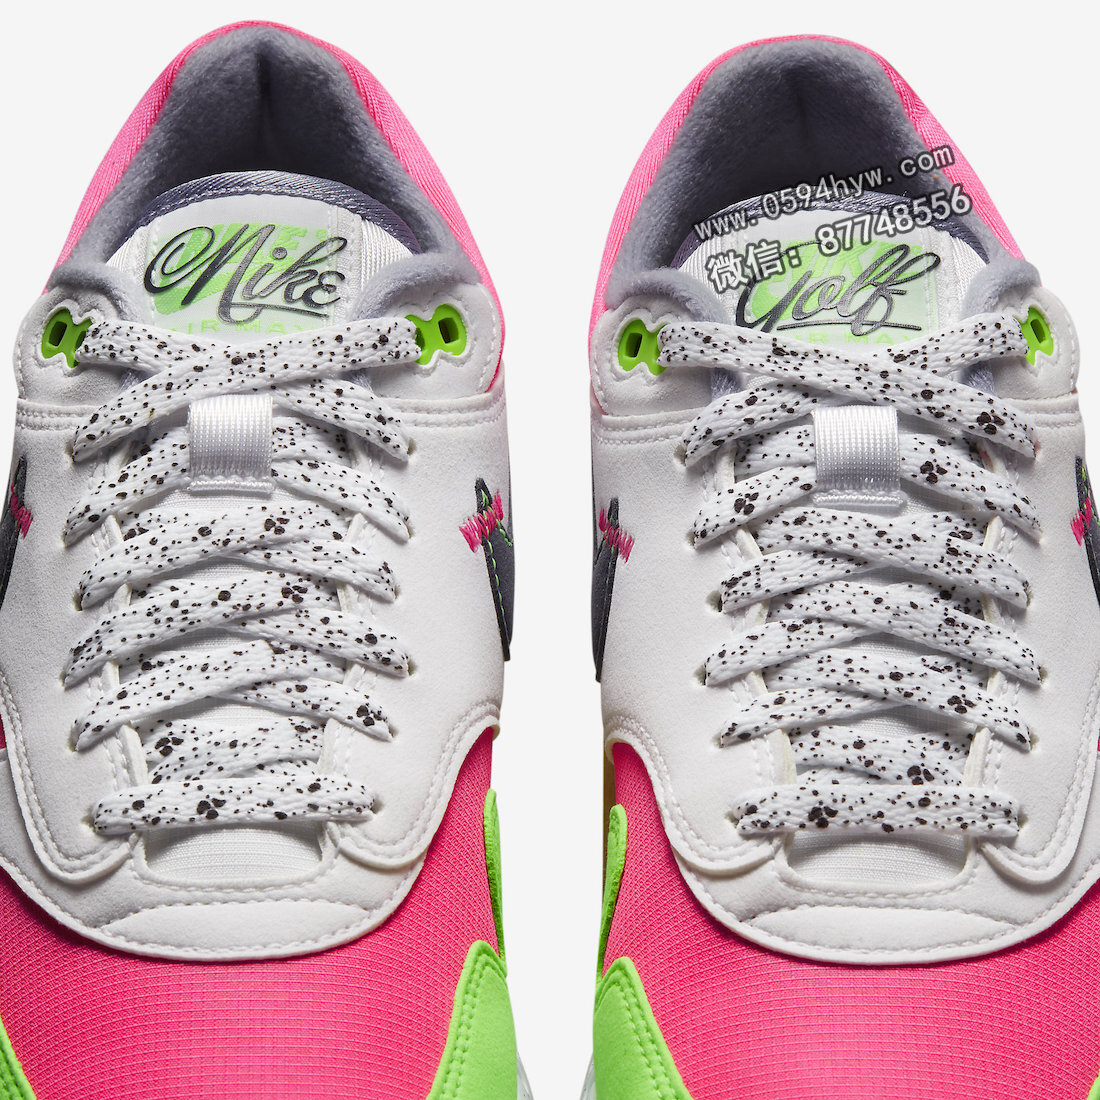 Watermelon, Nike Air Max 1 Golf “Watermelon”, Nike Air Max 1, Nike Air Max, Nike Air, NIKE, DX8436-103, Air Max 1, Air Max